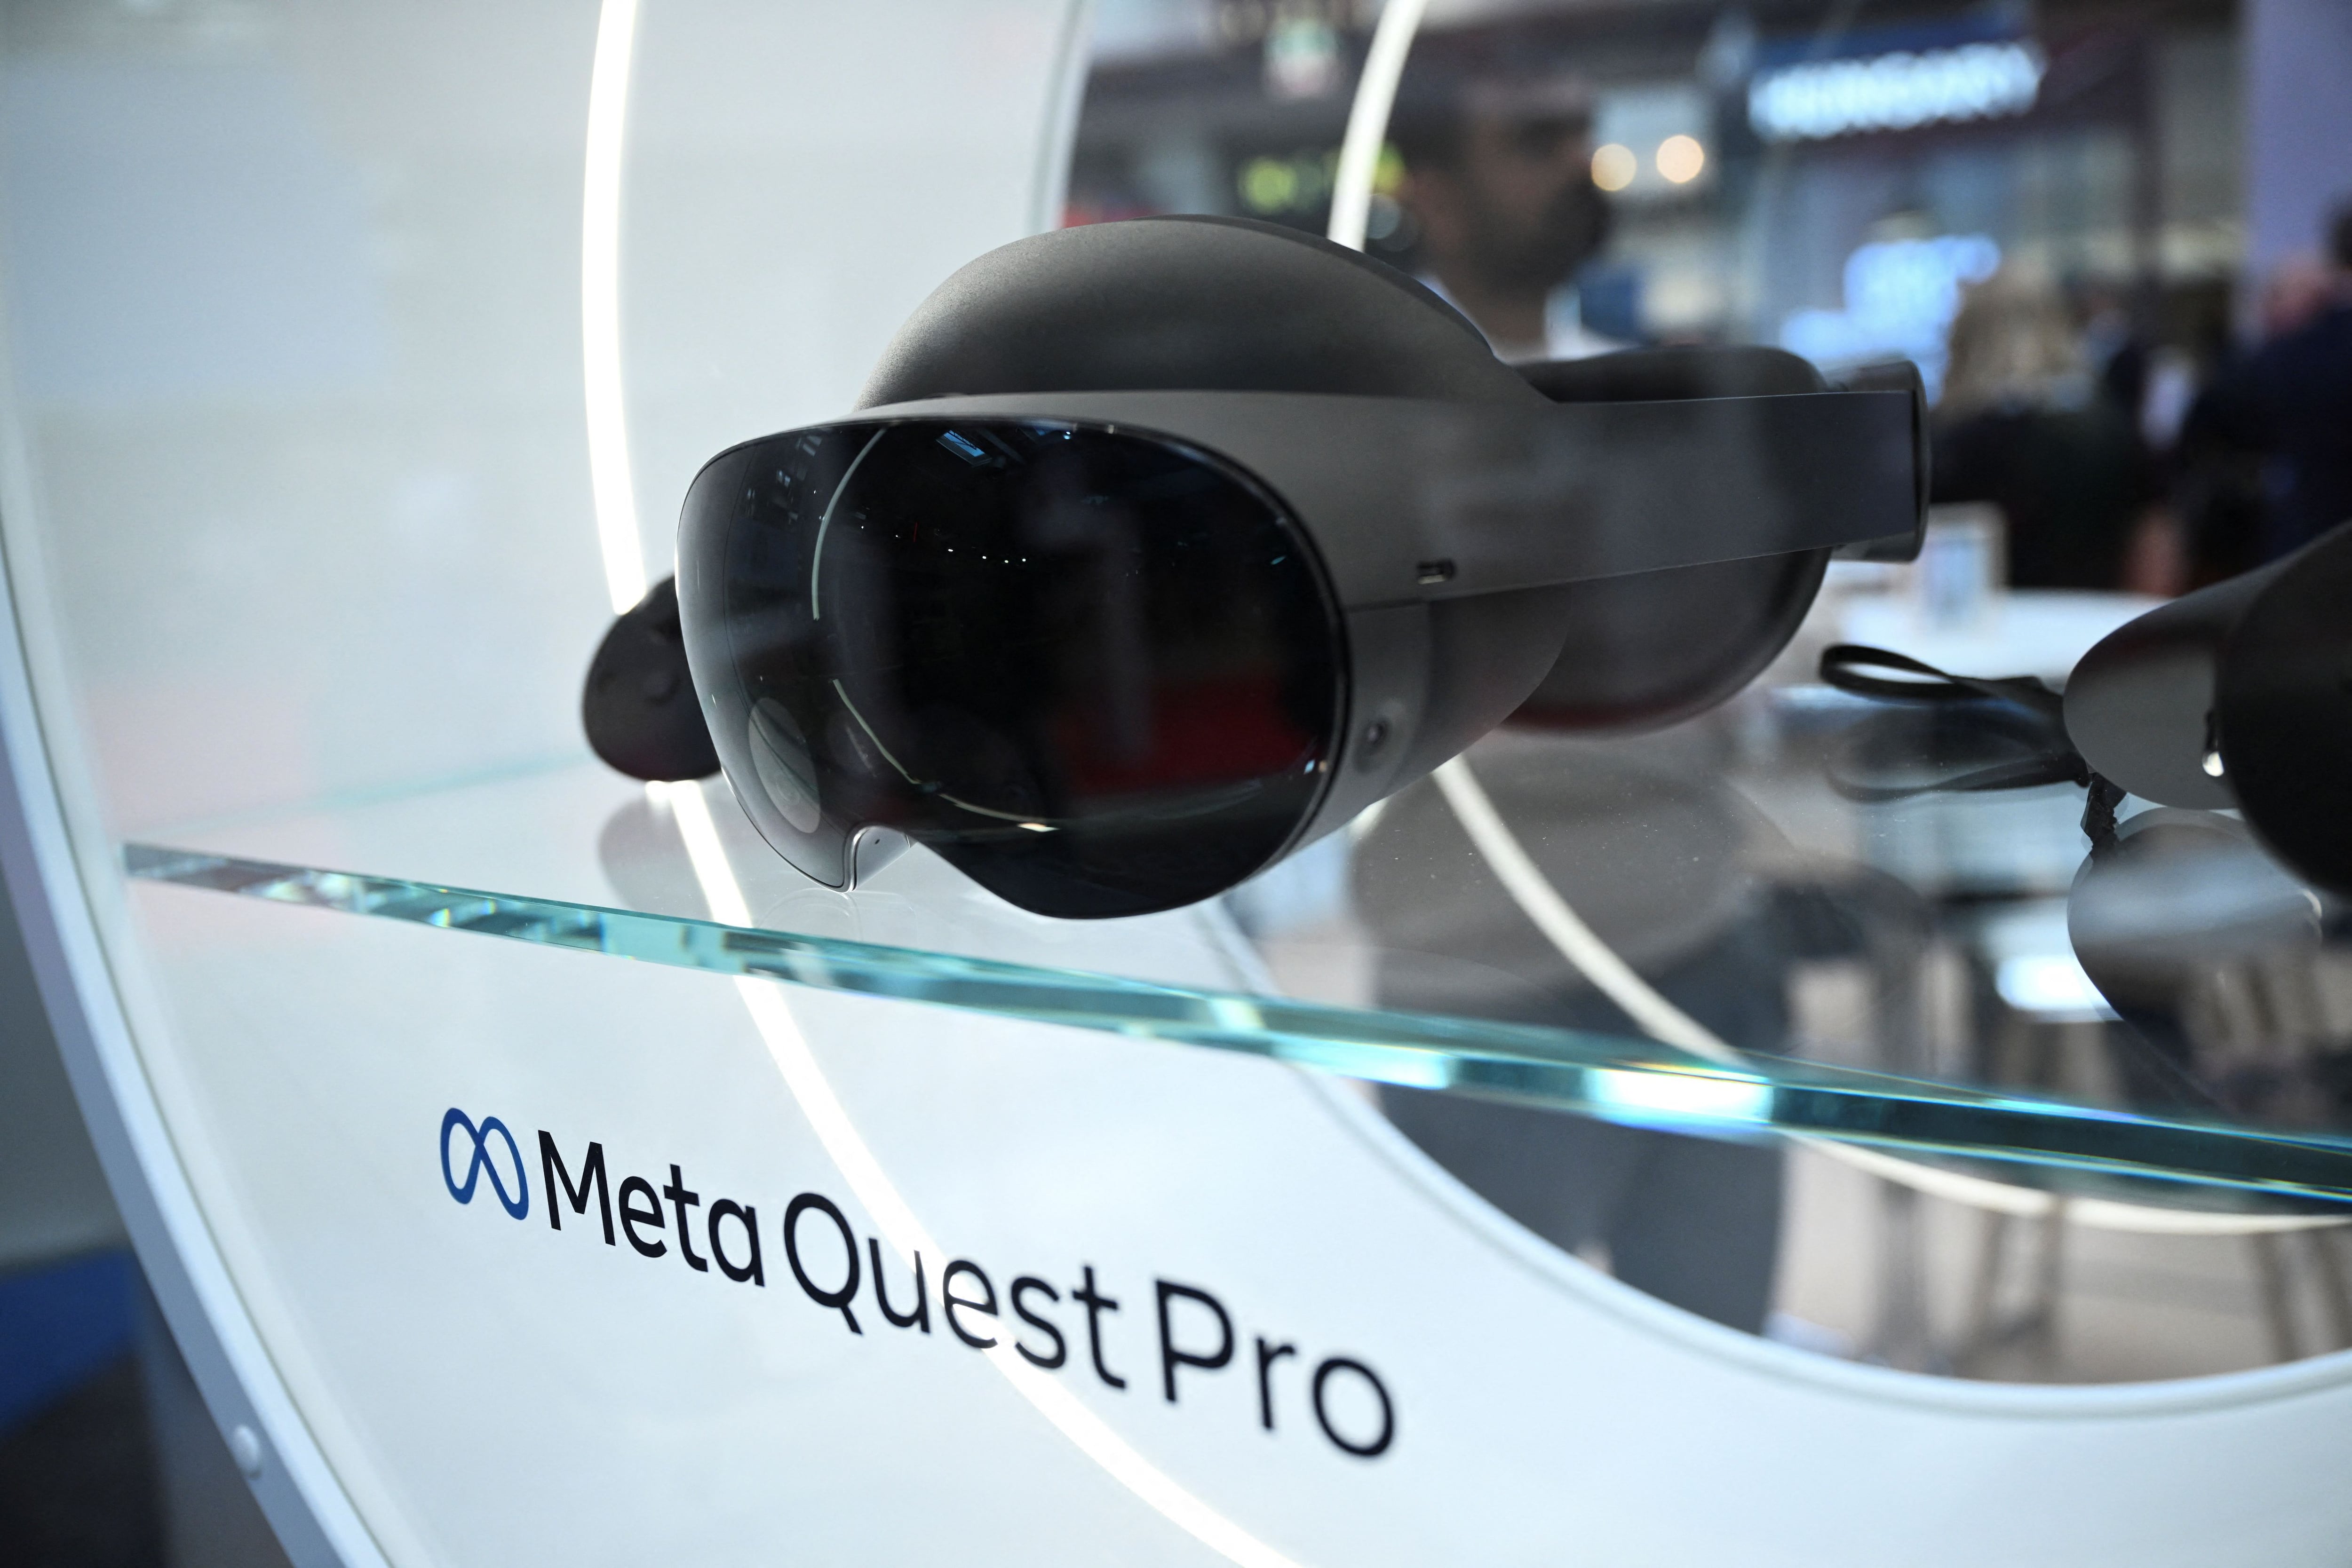 Meta Quest Pro son el último dispositivo lanzado por la compañía pensando en la gama alta y dando una experiencia más completa en realidad mixta. (REUTERS)